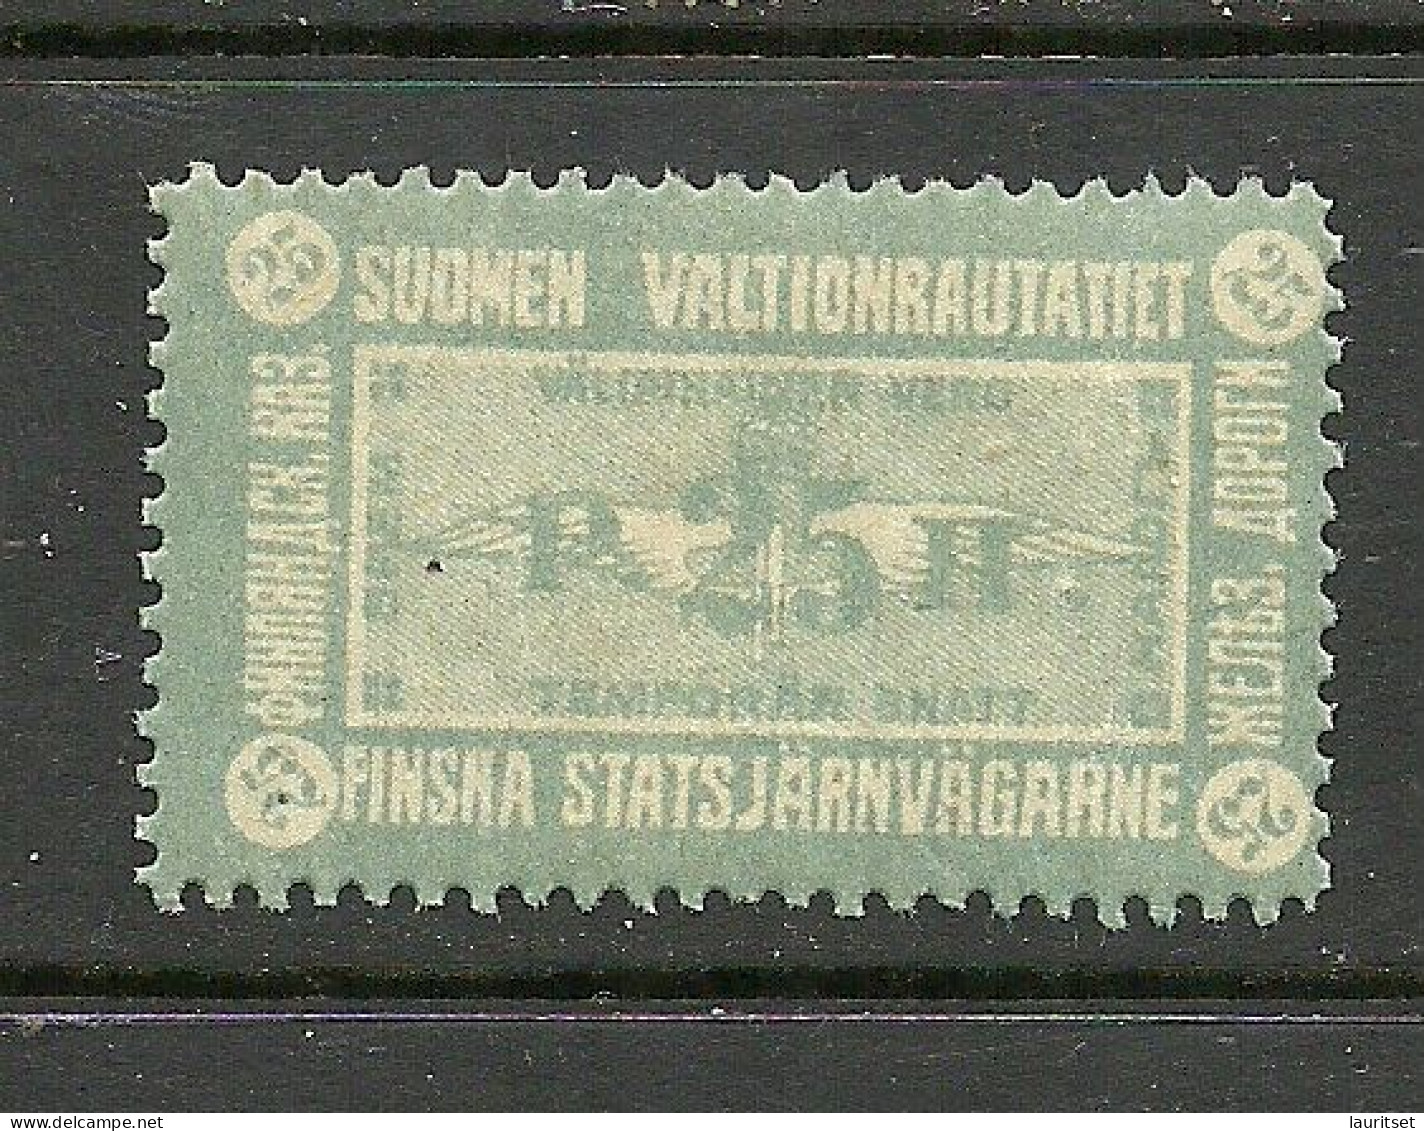 FINLAND FINNLAND 1915 Railway Stamp State Railway 25 P. MNH - Postpaketten